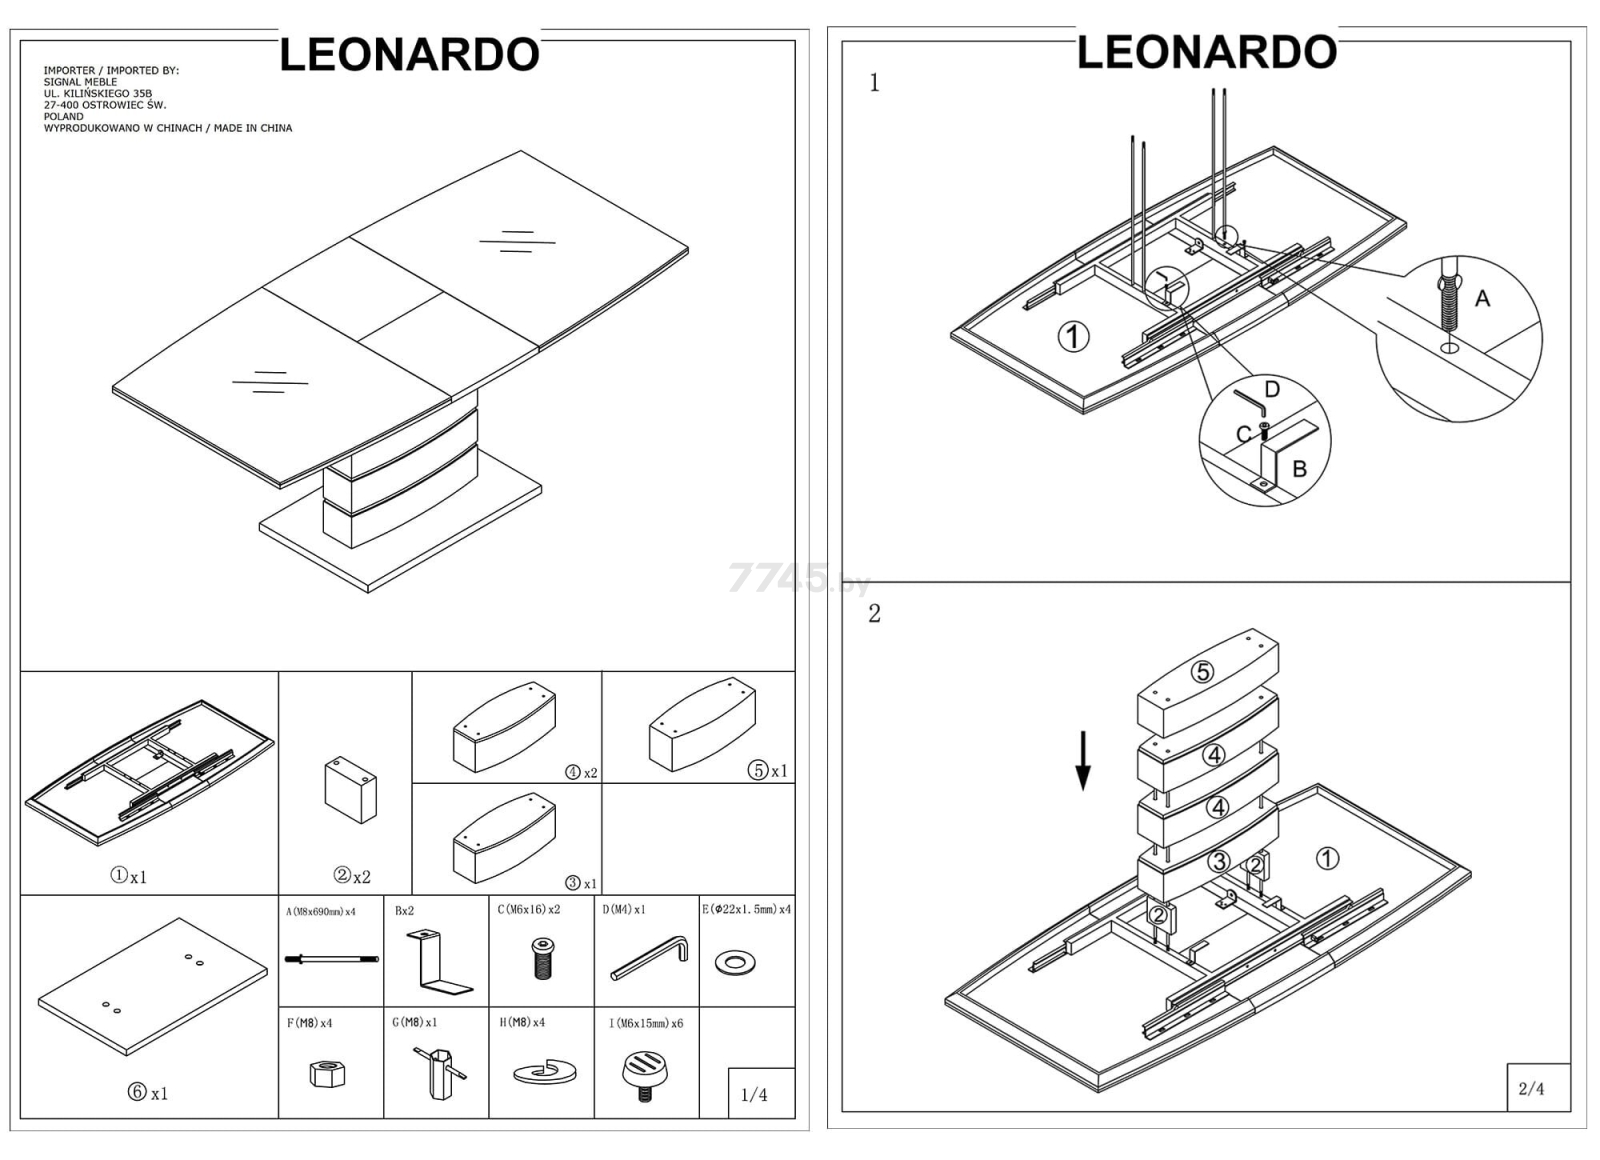 Стол кухонный SIGNAL Leonardo 140 дуб/черный 140-180х80х76 см (LEONARDODD140) - Фото 11